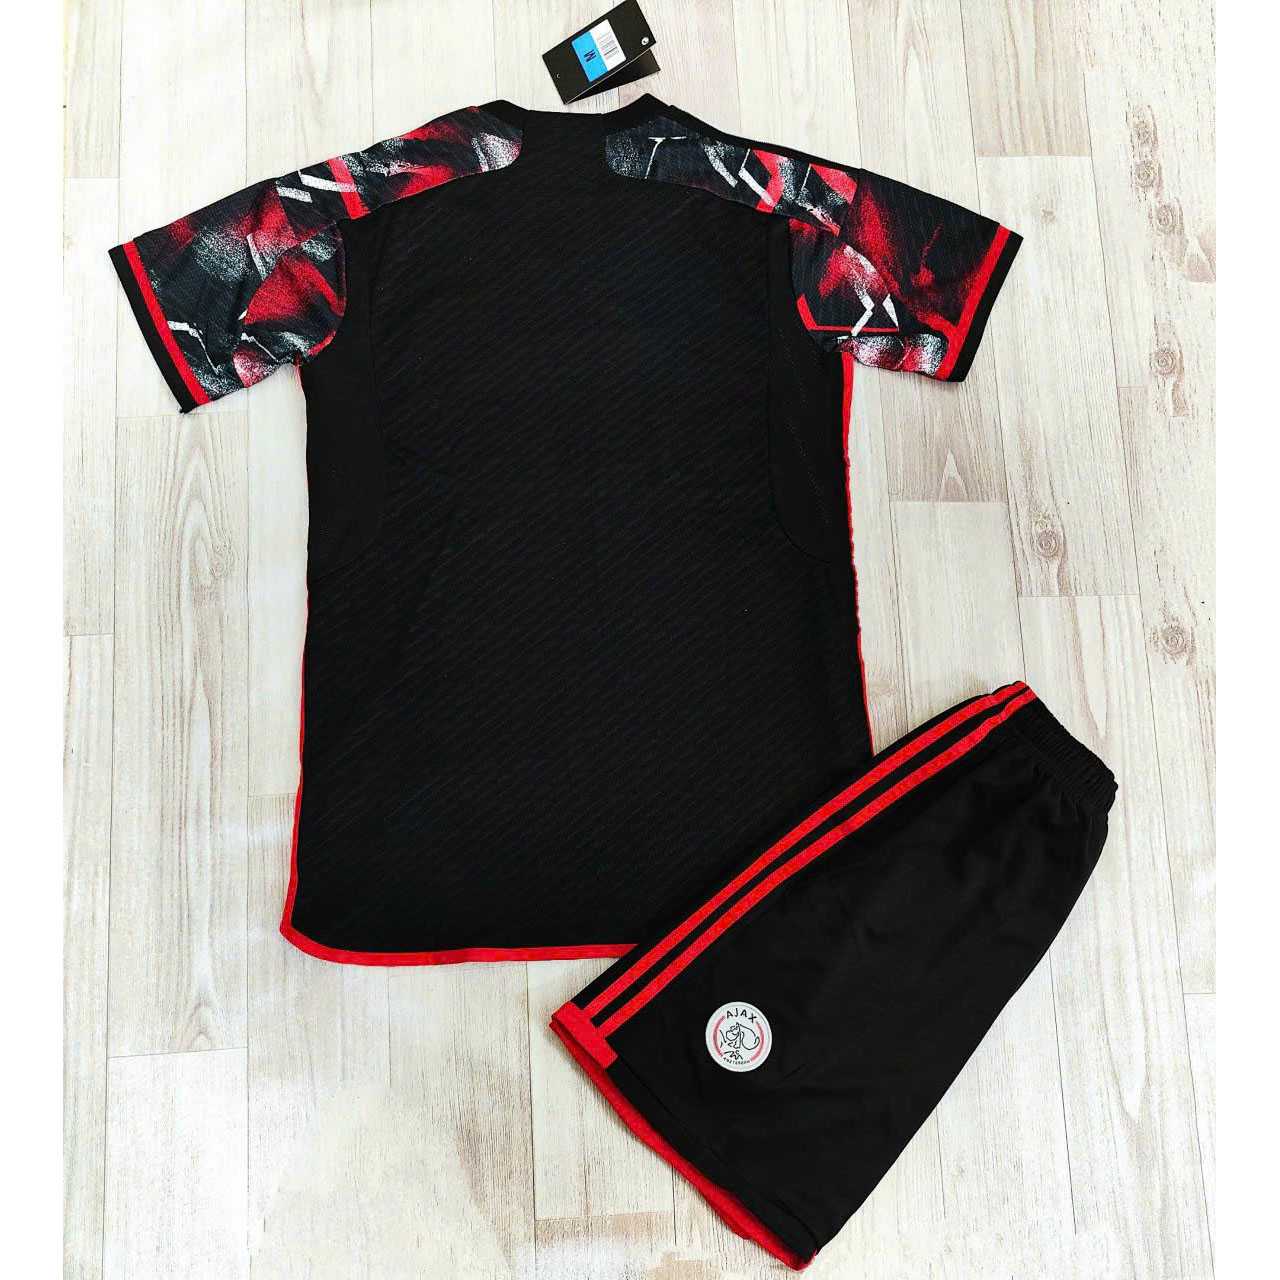 Bộ quần áo đá banh clb bóng đá fan người hâm mộ thiết kế ziggo ajax đen hoạ tiết đỏ logo thêu vải gai mịn thái 2